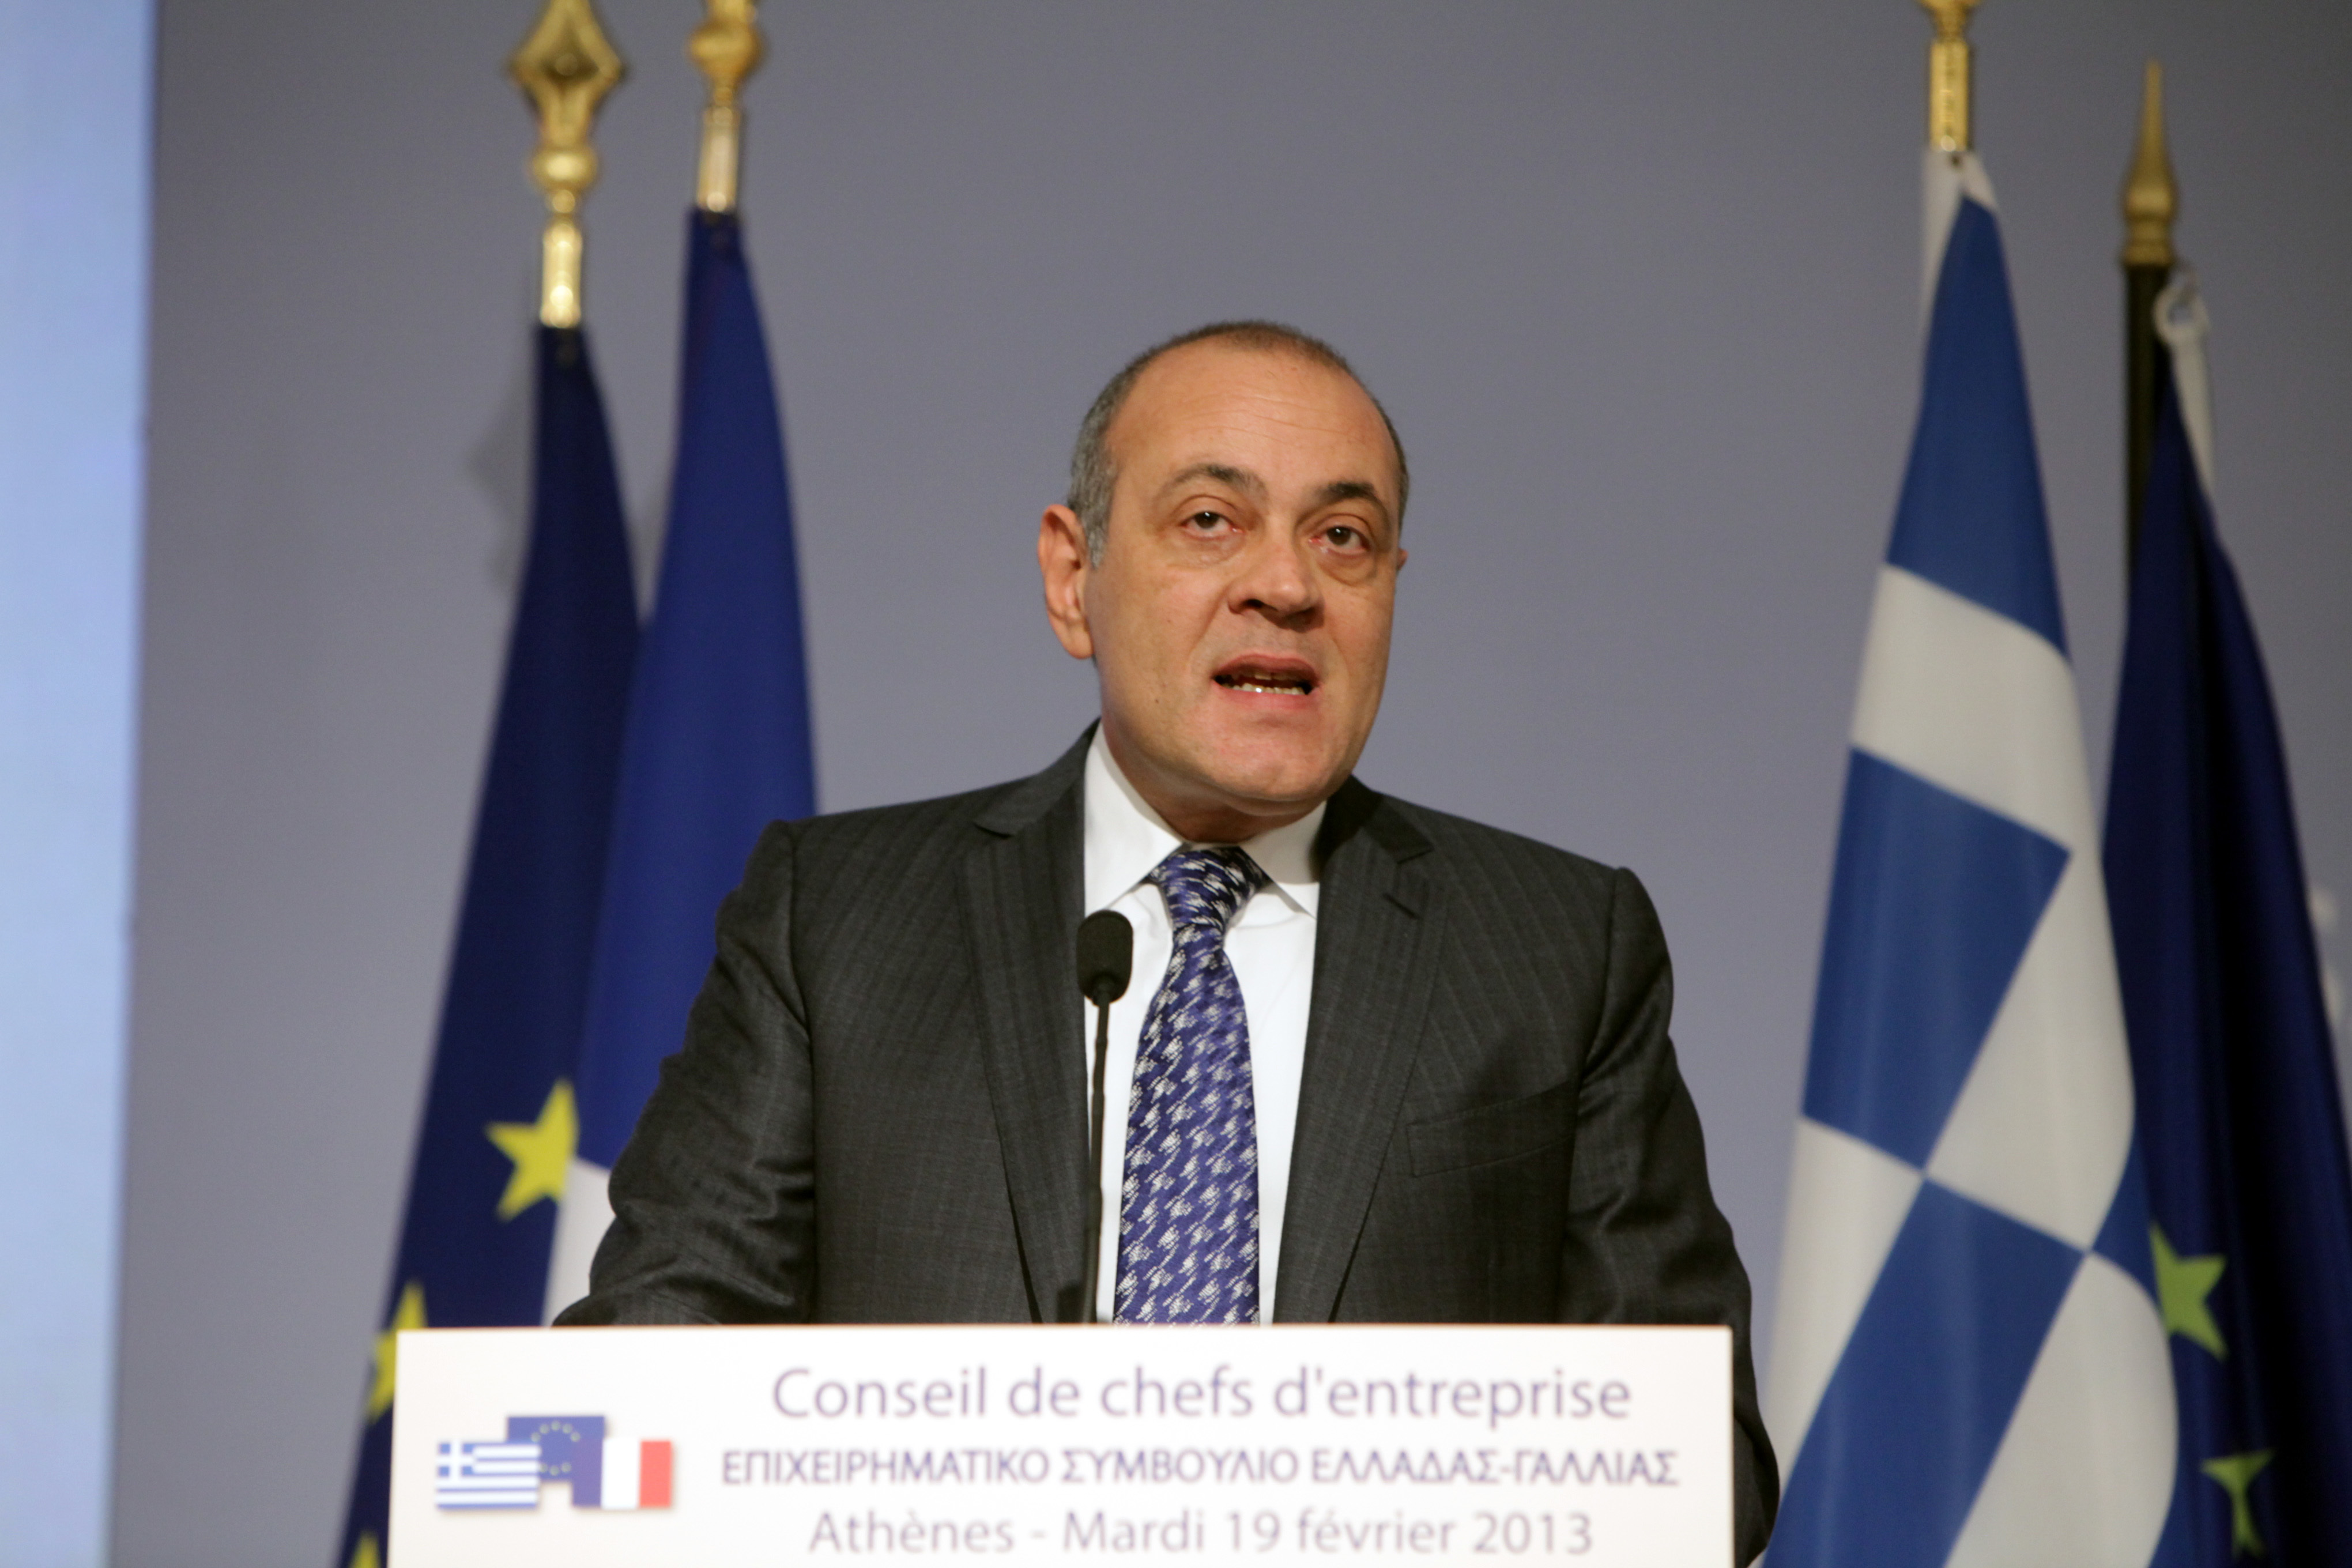 Δασκαλόπουλος: “Να καταλάβει η Ελλάδα ότι ο χρόνος τελείωσε”